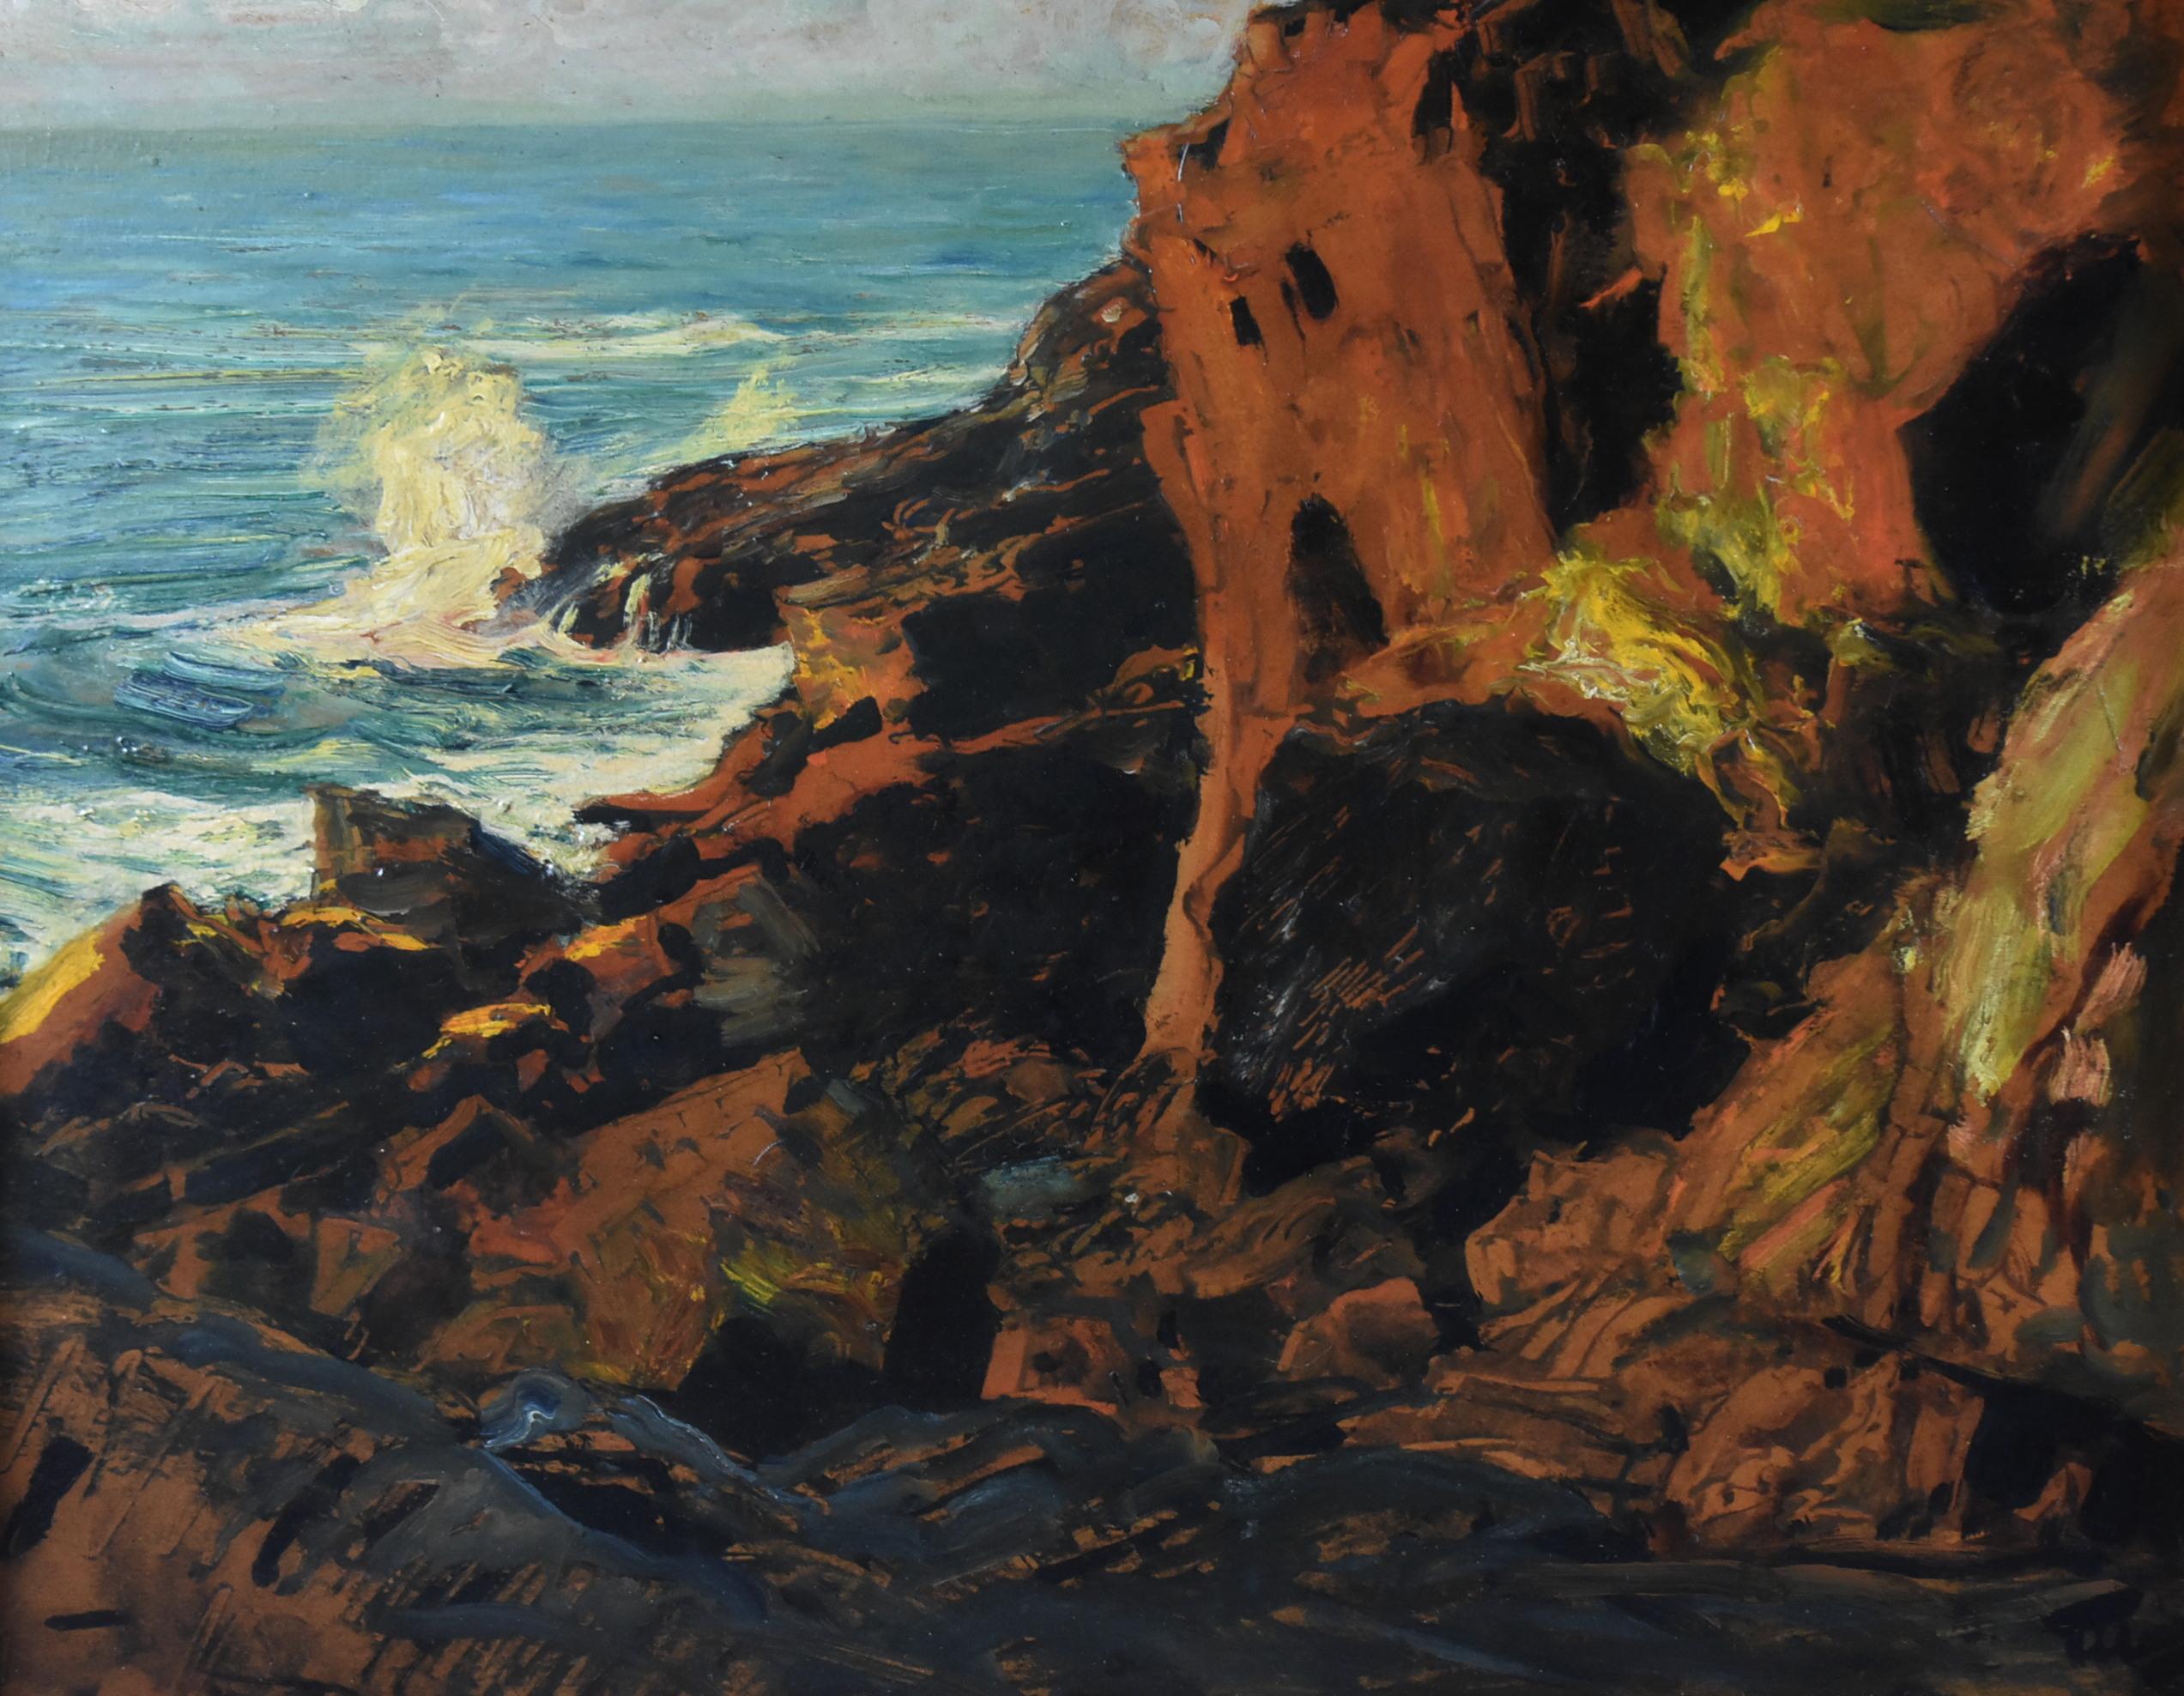 Huile marine de Frederick Judd Waugh (1861-1940). Les vagues s'écrasent contre les falaises dans ce paysage marin dramatique à bord, avec des nuances de rouille et de bleu vert. Signé en bas à droite. Taille totale 19 1/4